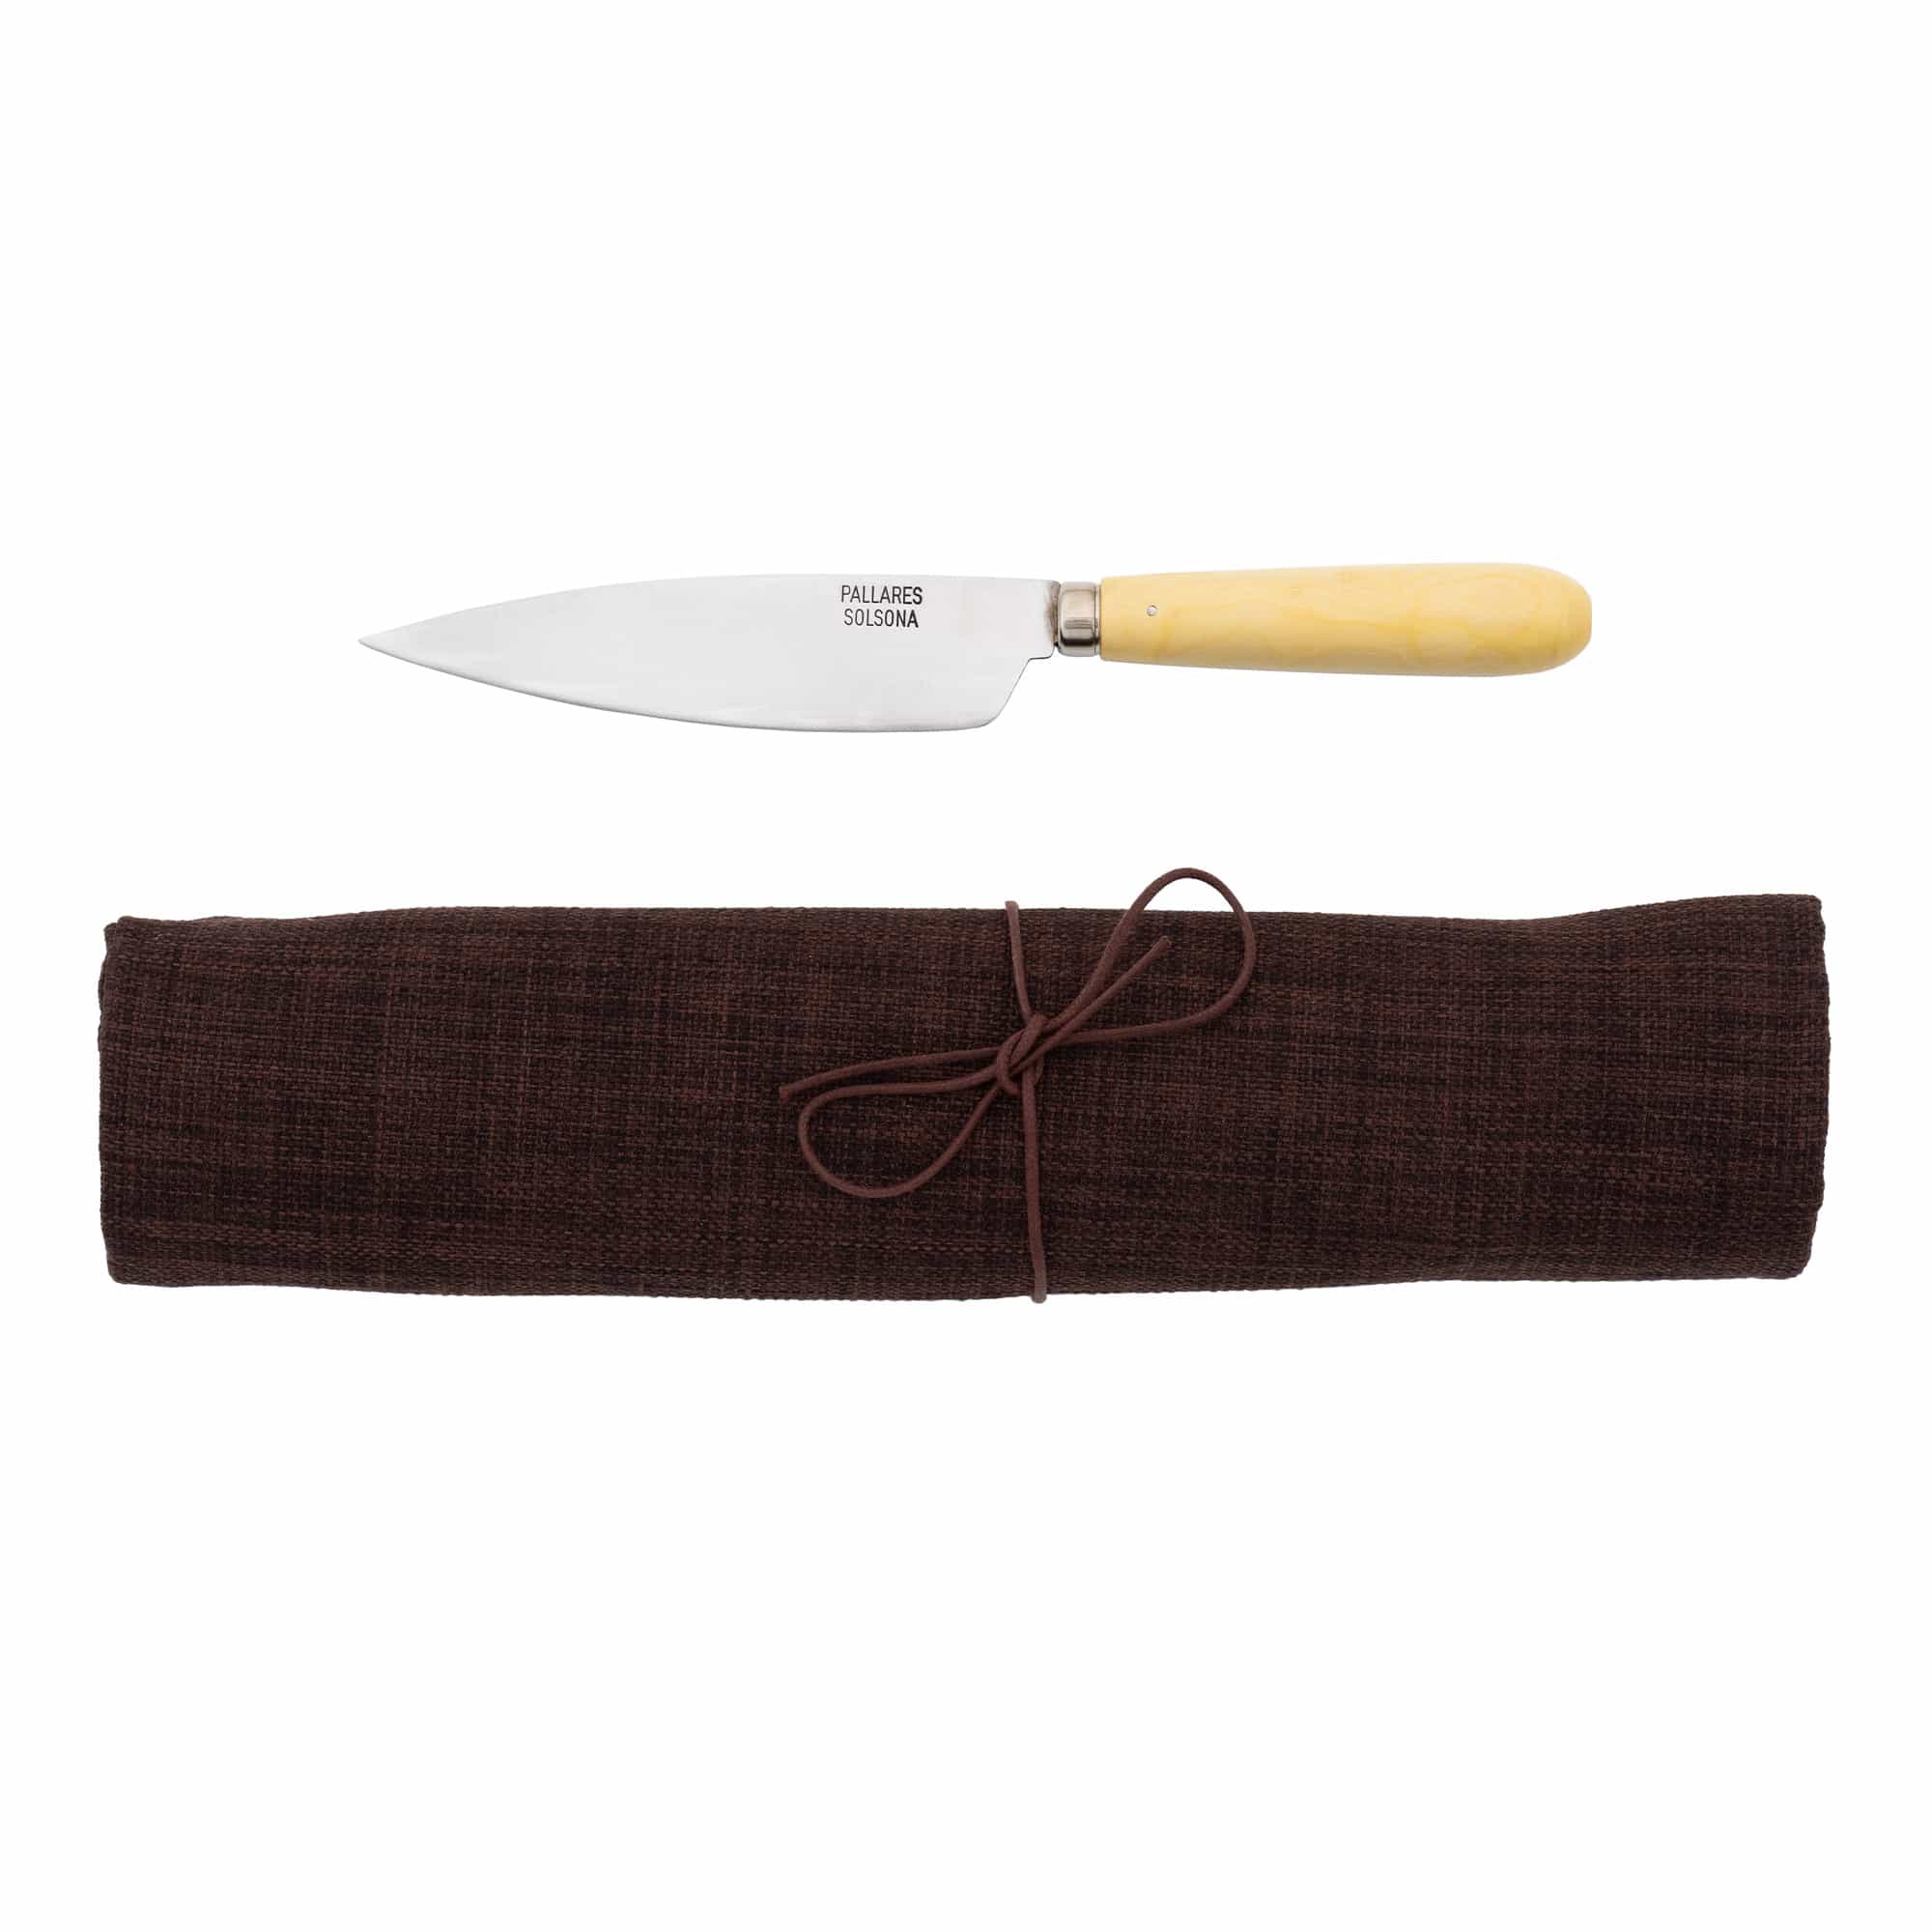 Tradisjonelle kjøkkenkniver i karbonstål / brunt sett